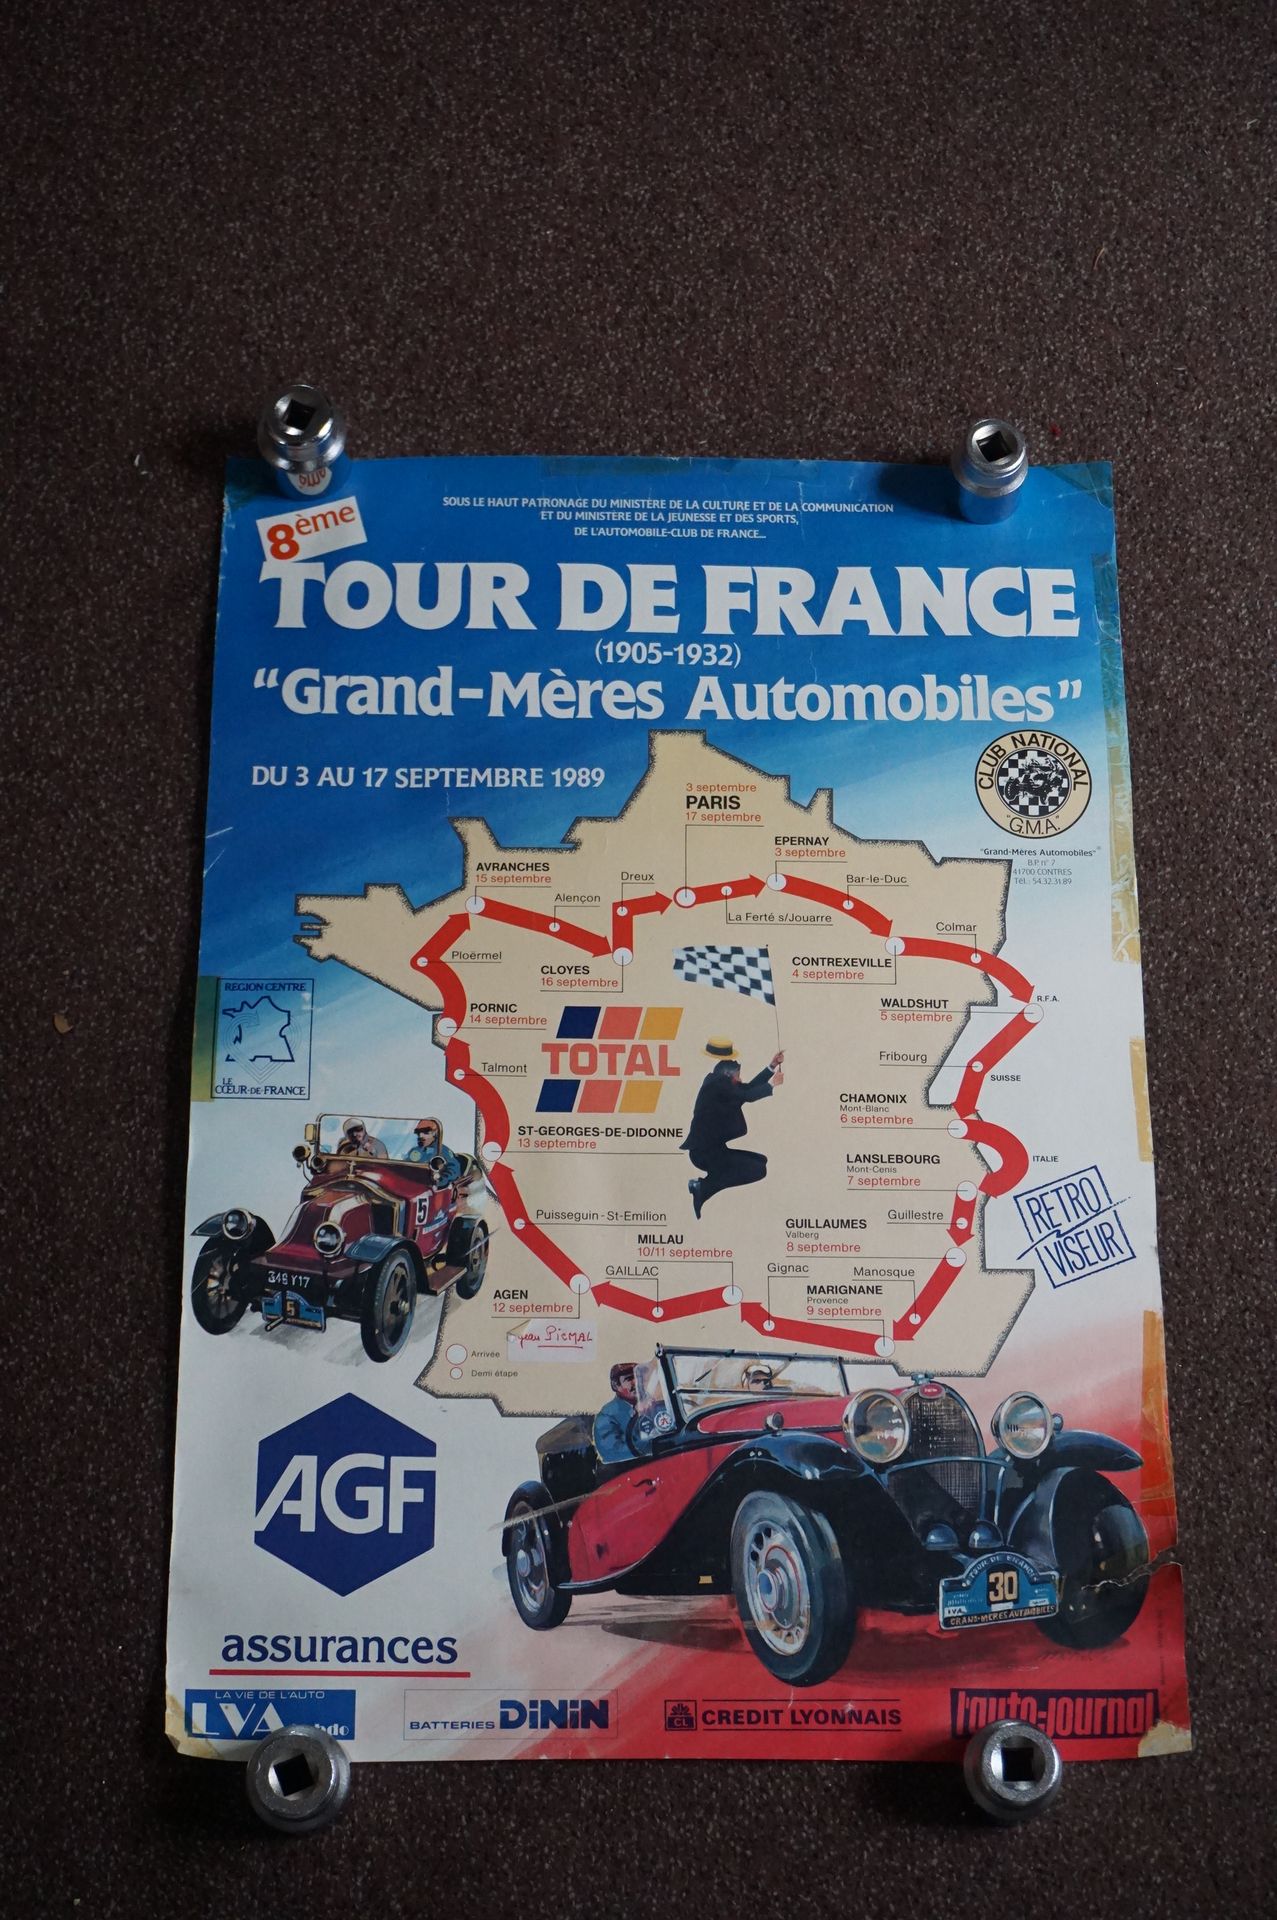 Null Poster "8th Tour de France des Grand Mères 
Automobiles".